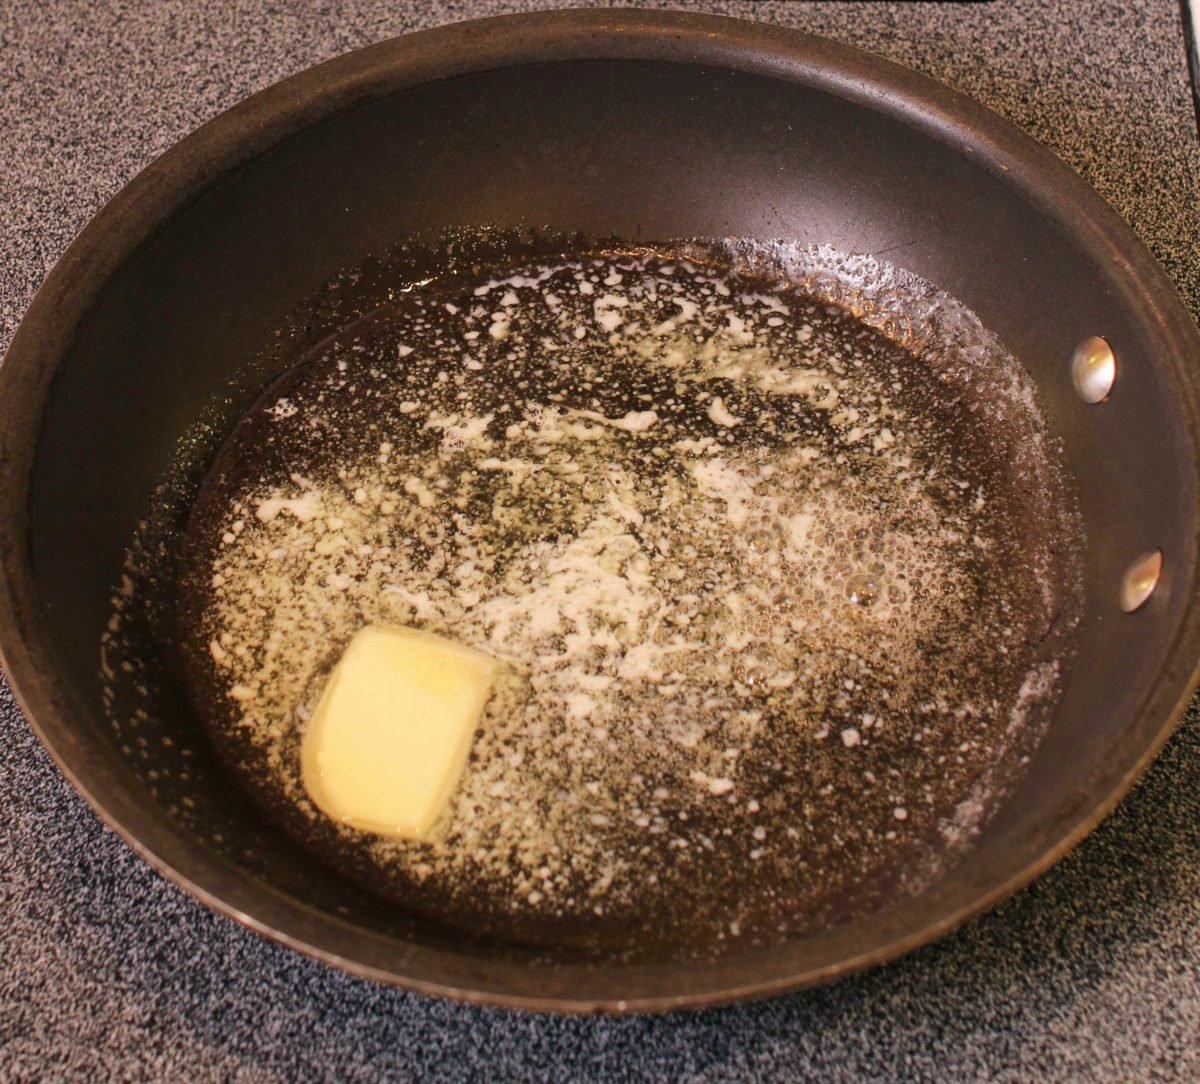 butter melting in a skillet.